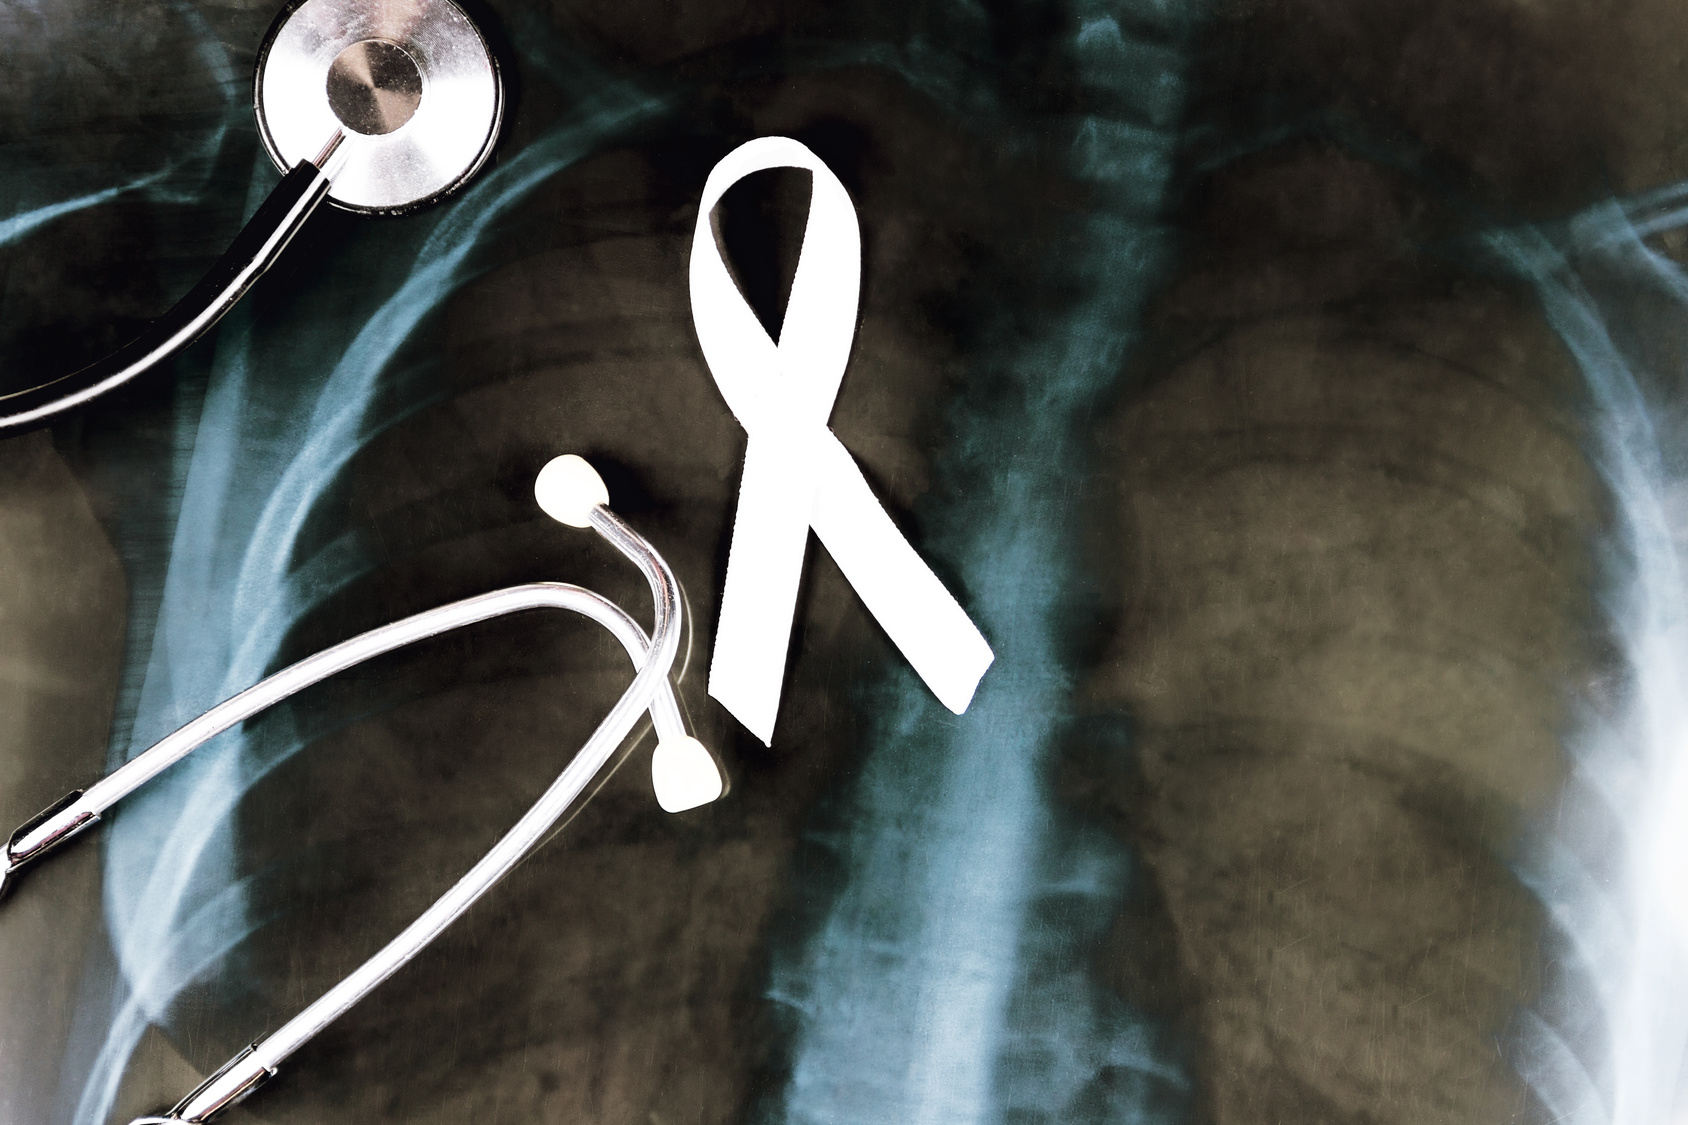 Rak płuc jako główna przyczyna zgonów z powodu chorób nowotworowych